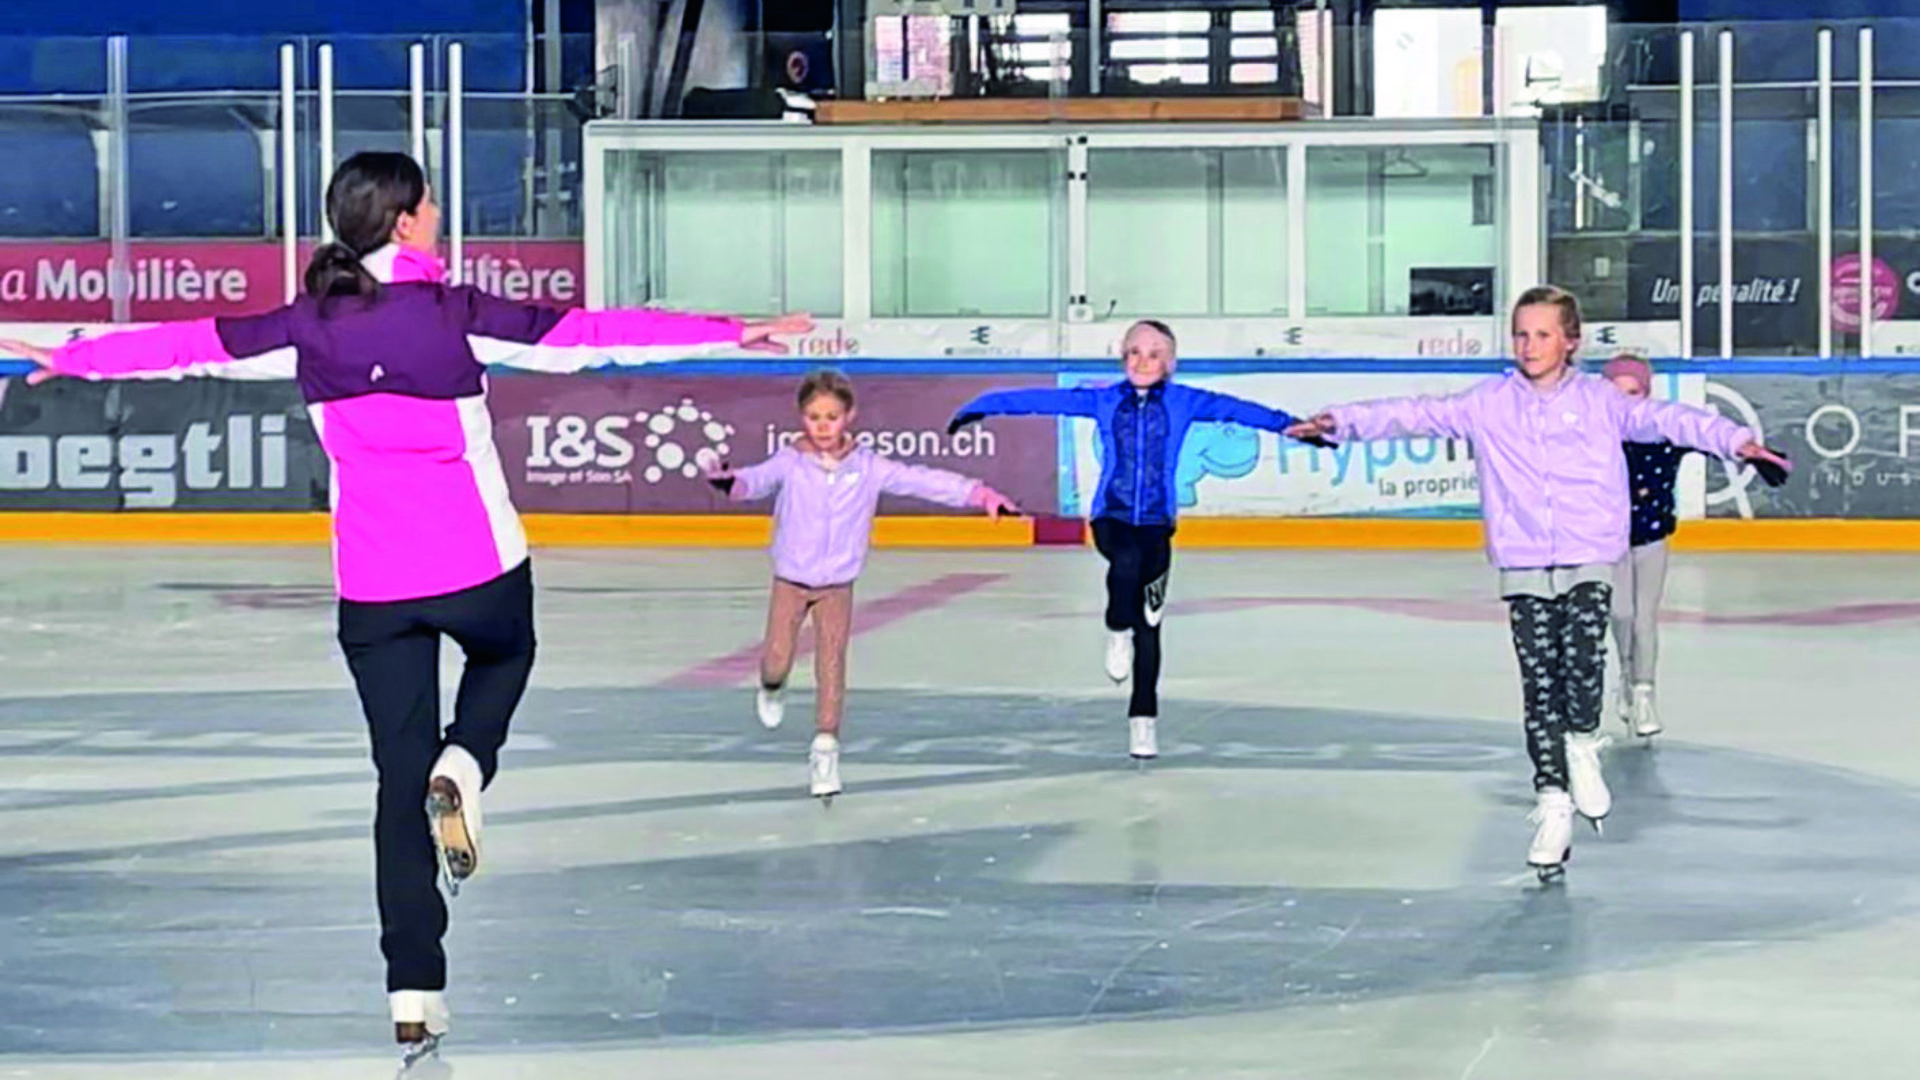 L’école de patinage accueille les enfants dès 4 ans. Les adultes aussi. Pour la compétition, ou juste pour le plaisir de la glisse. (Photos Club des Patineurs)